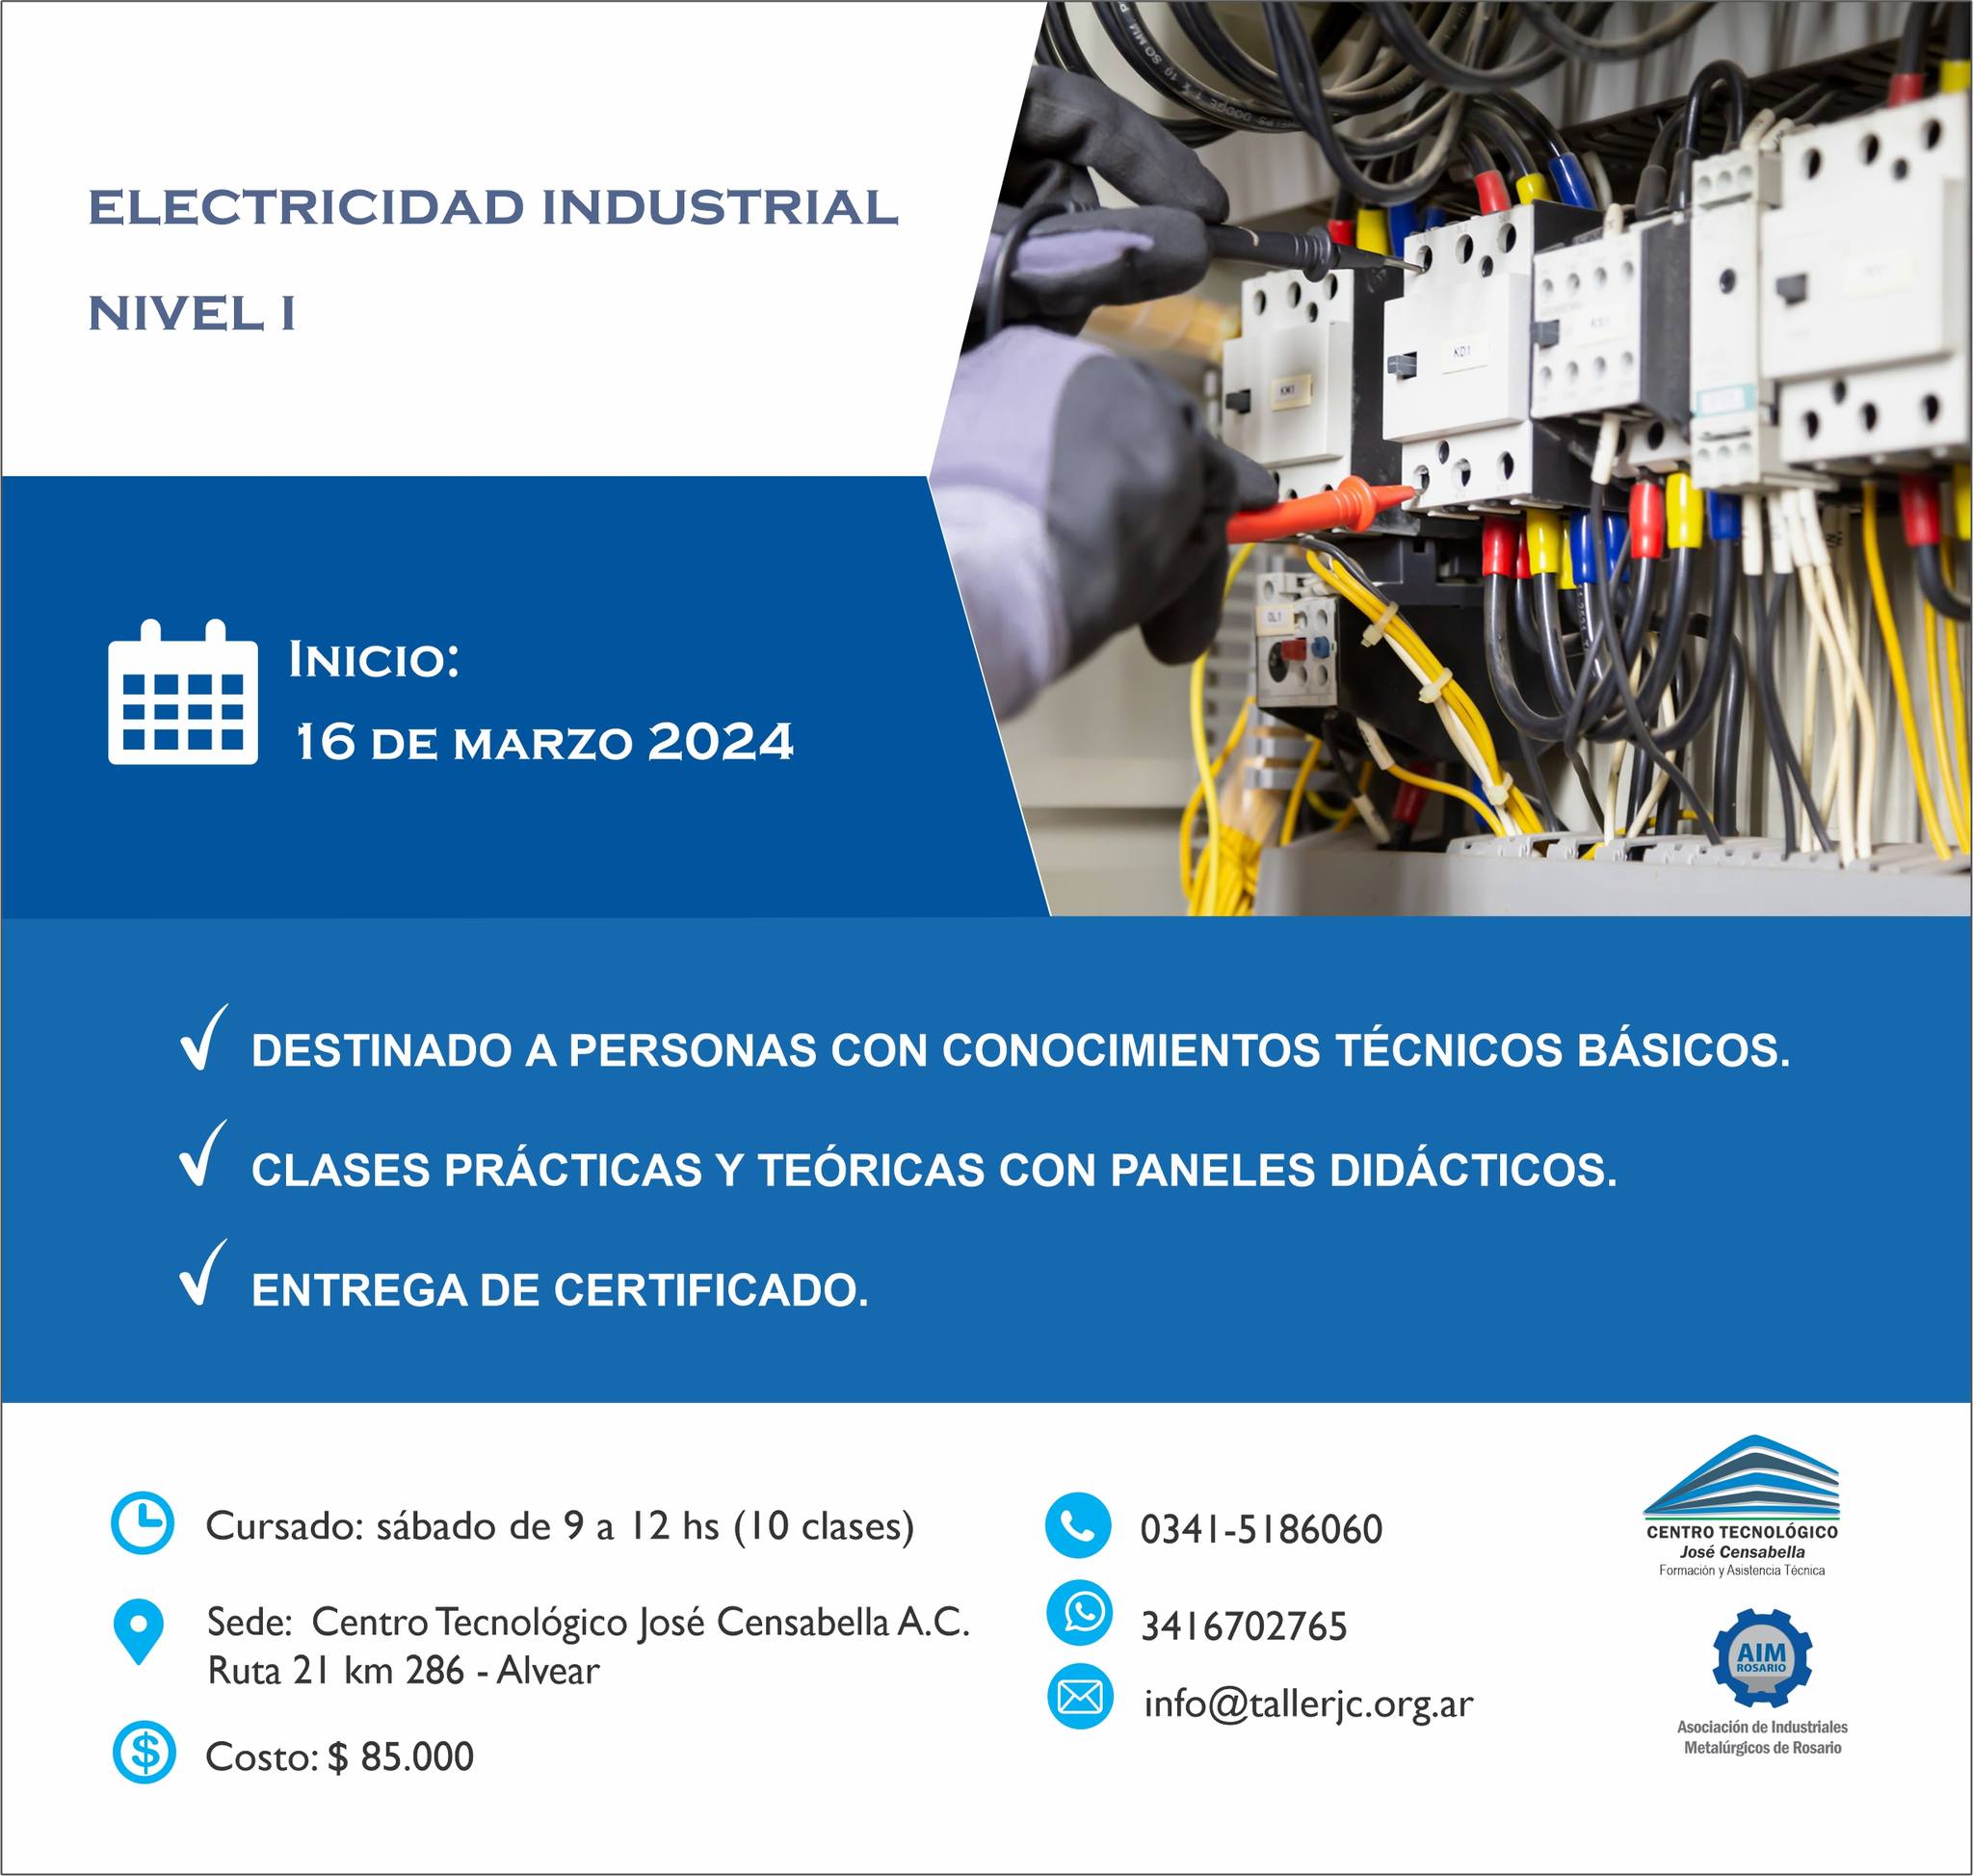 Cursos y certificaciones laborales disponibles en el Centro Tecnológico José Censabella 